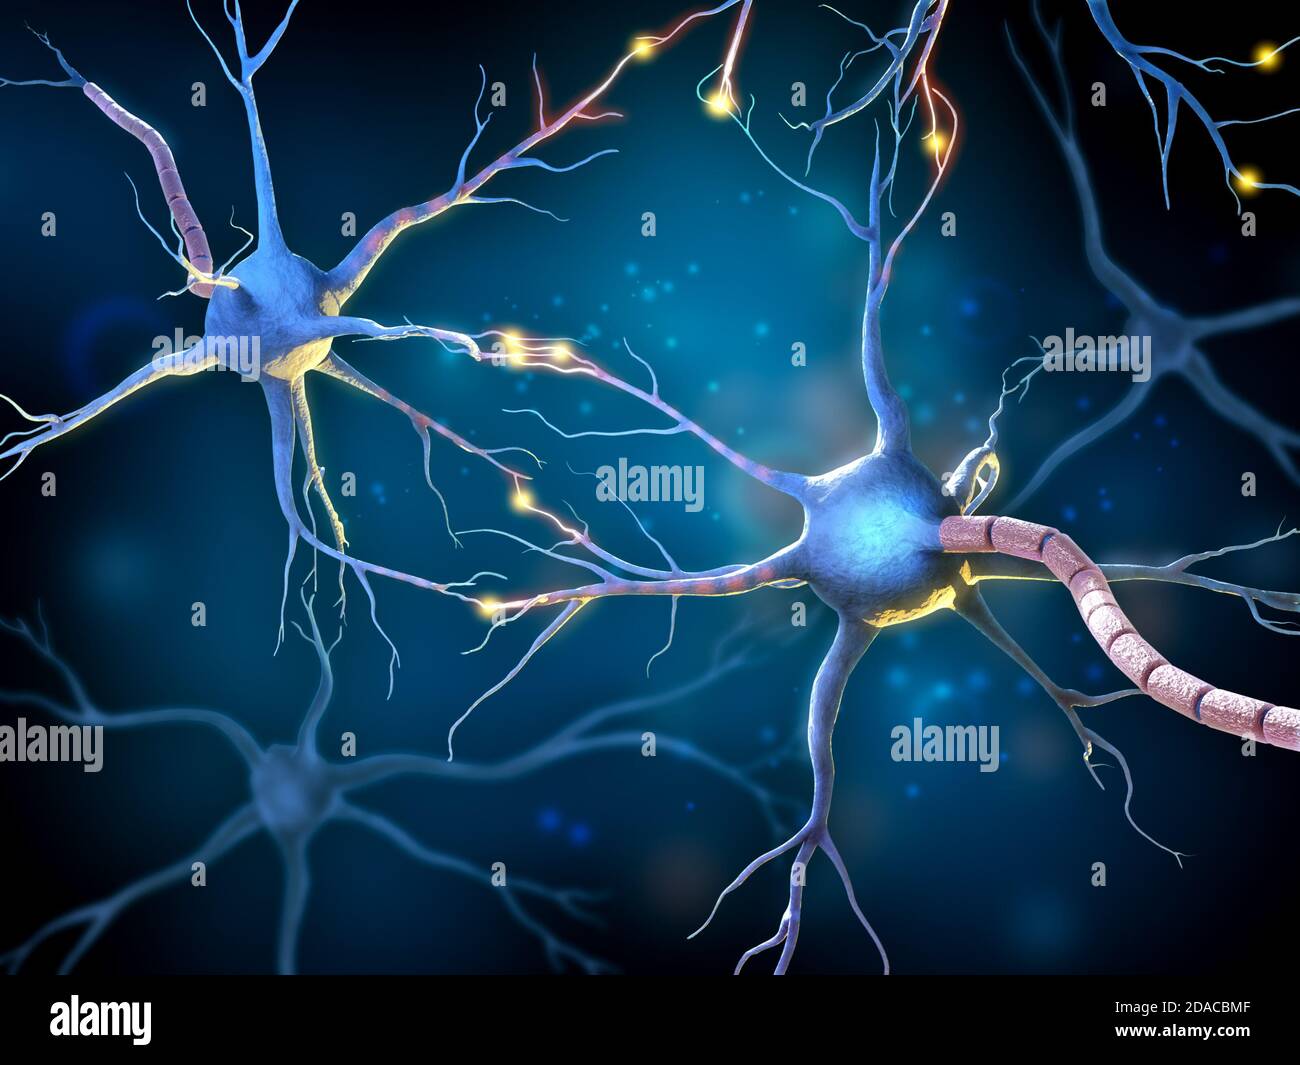 Réseau de neurones multipolaires avec récepteurs luminescents. Illustration 3D. Banque D'Images